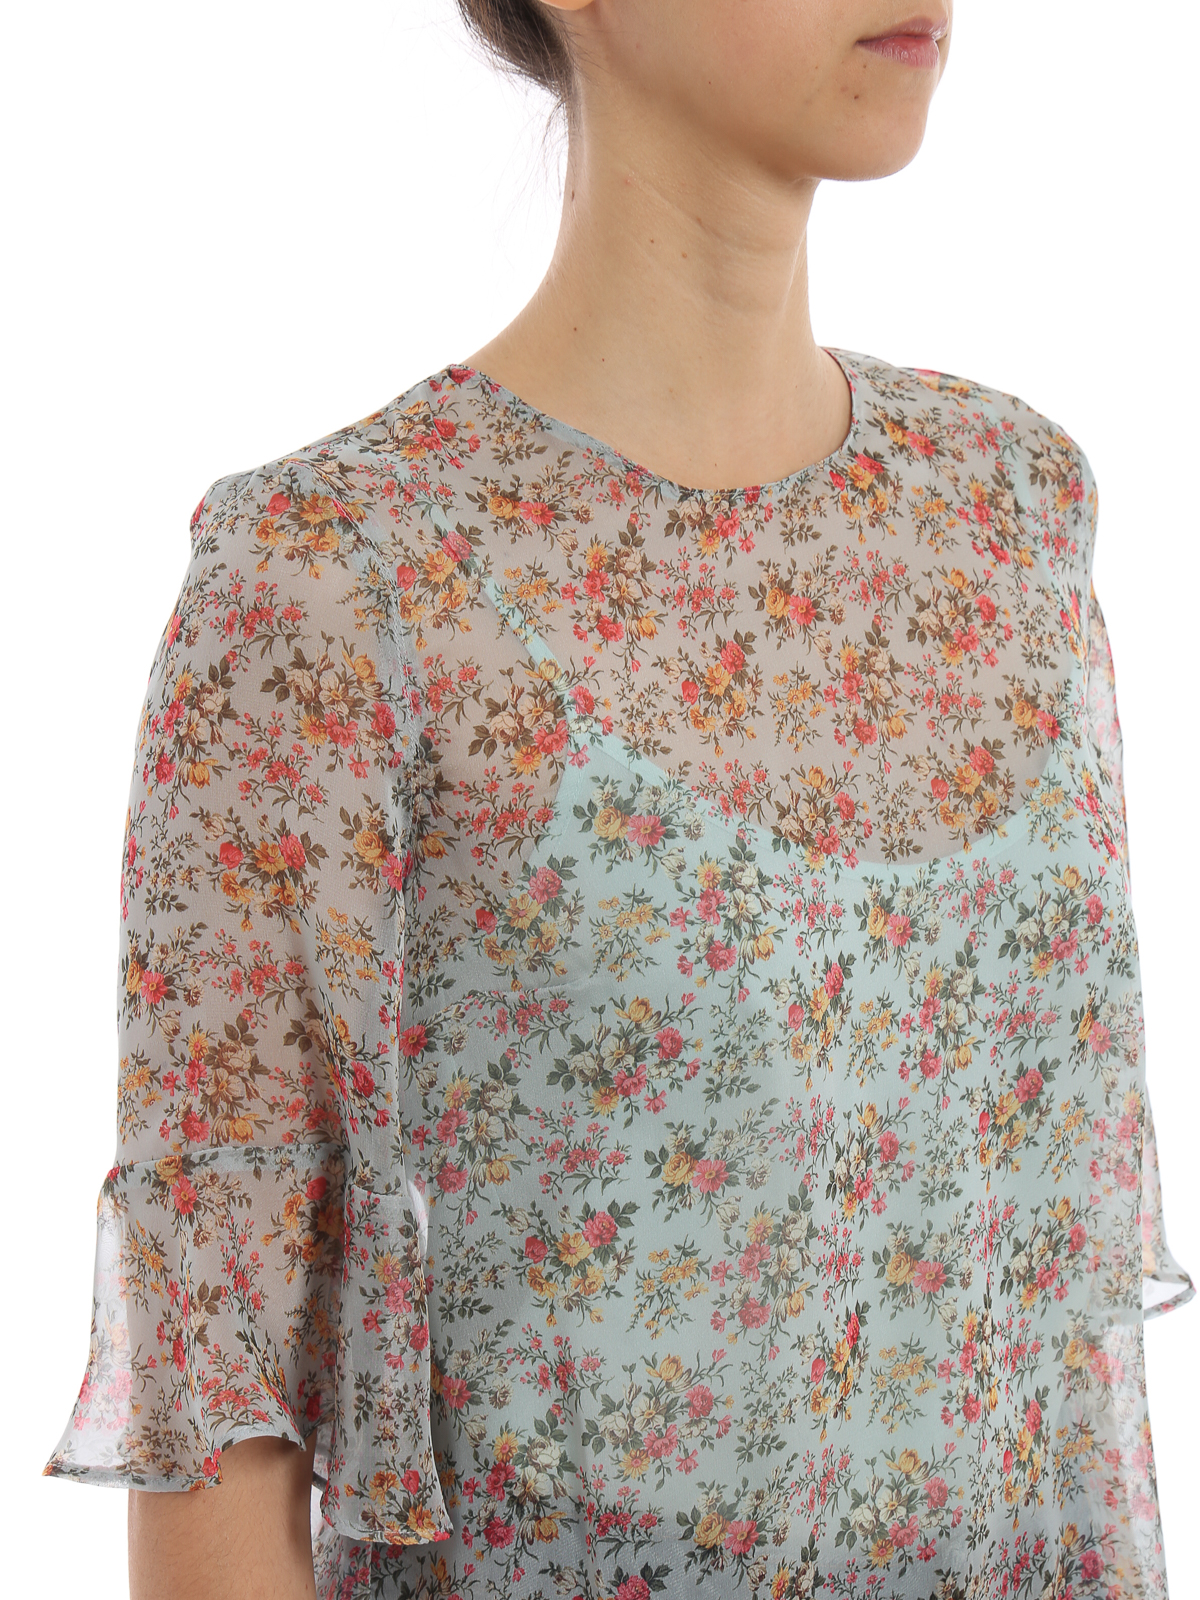 kleermaker Ingenieurs klink Blouses Twinset - Floral print sheer georgette blouse - 191TP25723597